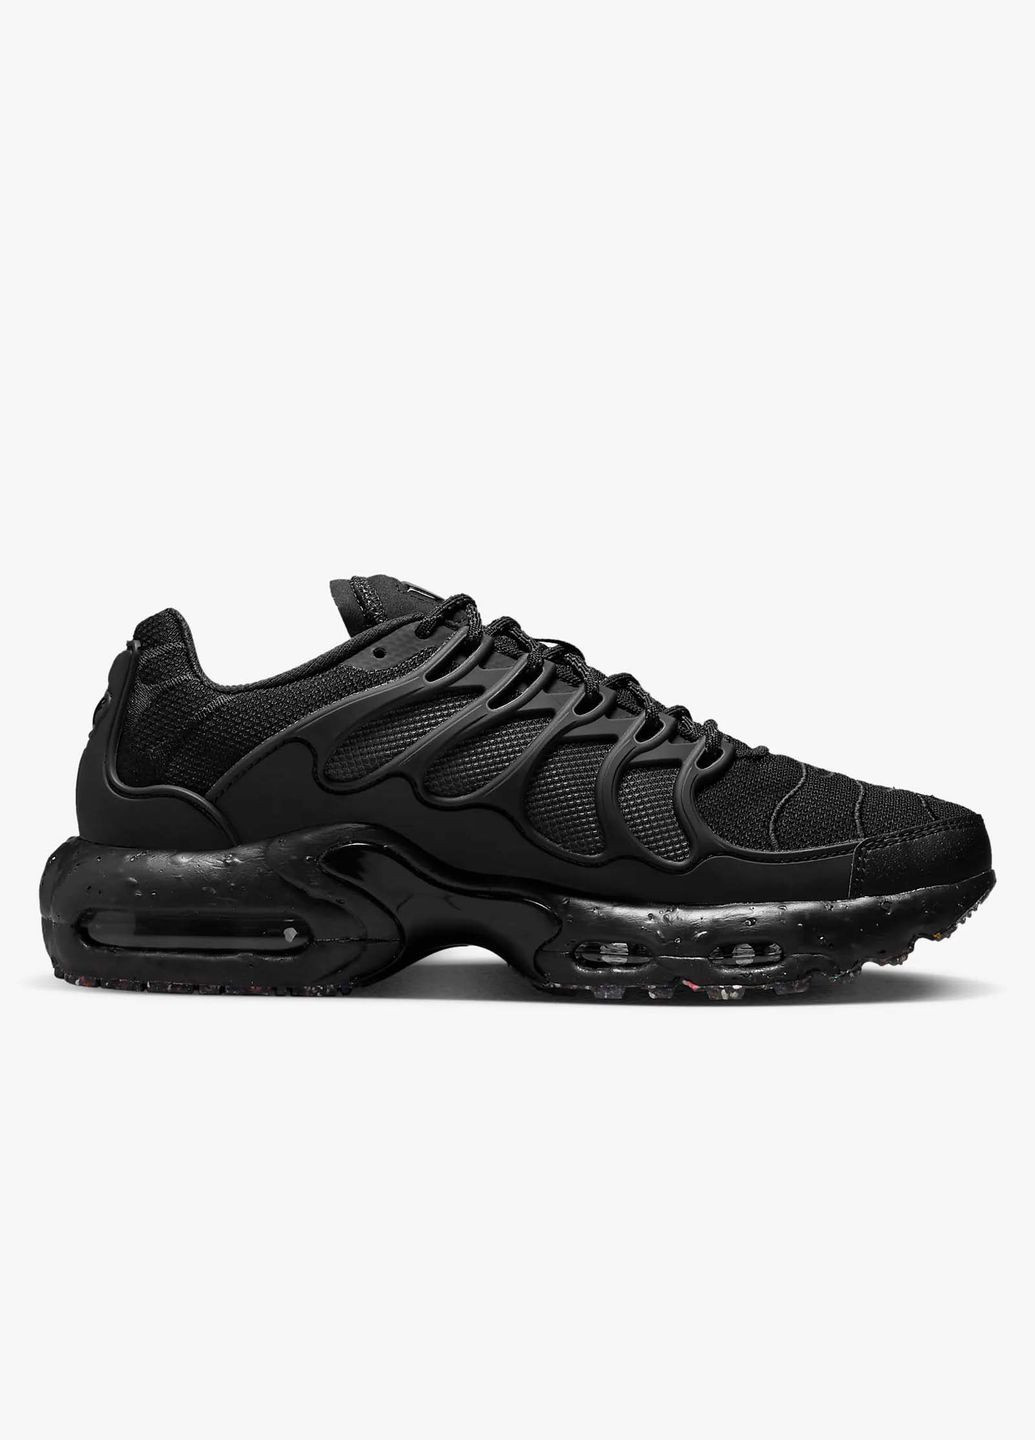 Чорні всесезон кросівки чоловічі air max terrascape plus dq3977-001 весна-літо синтетика текстиль чорні Nike